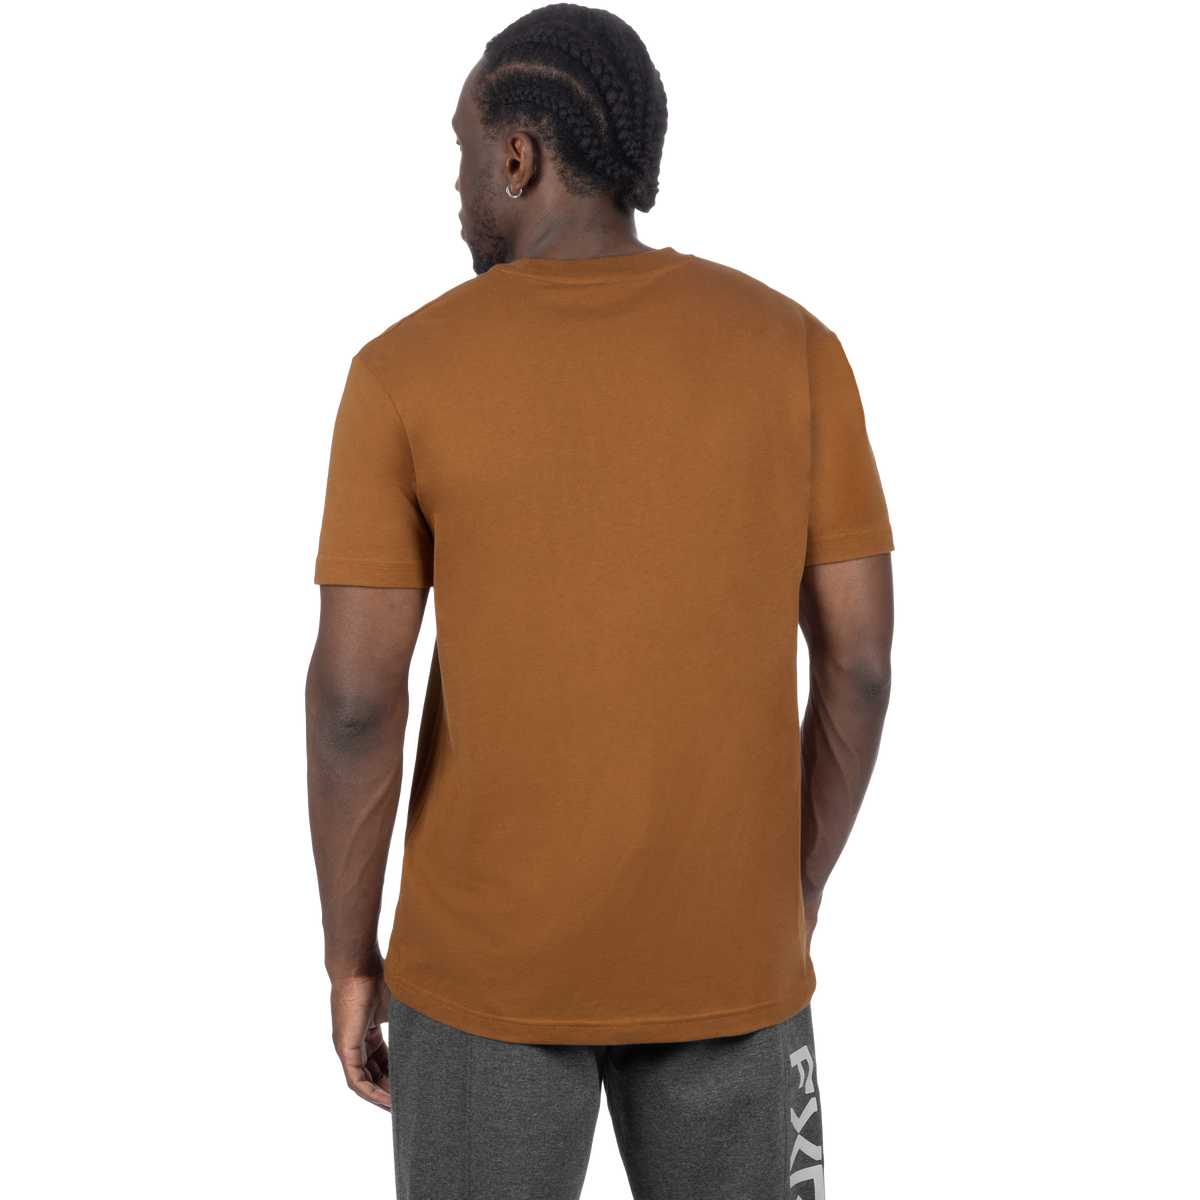 FXR Podium Premium T-Shirt - 2024